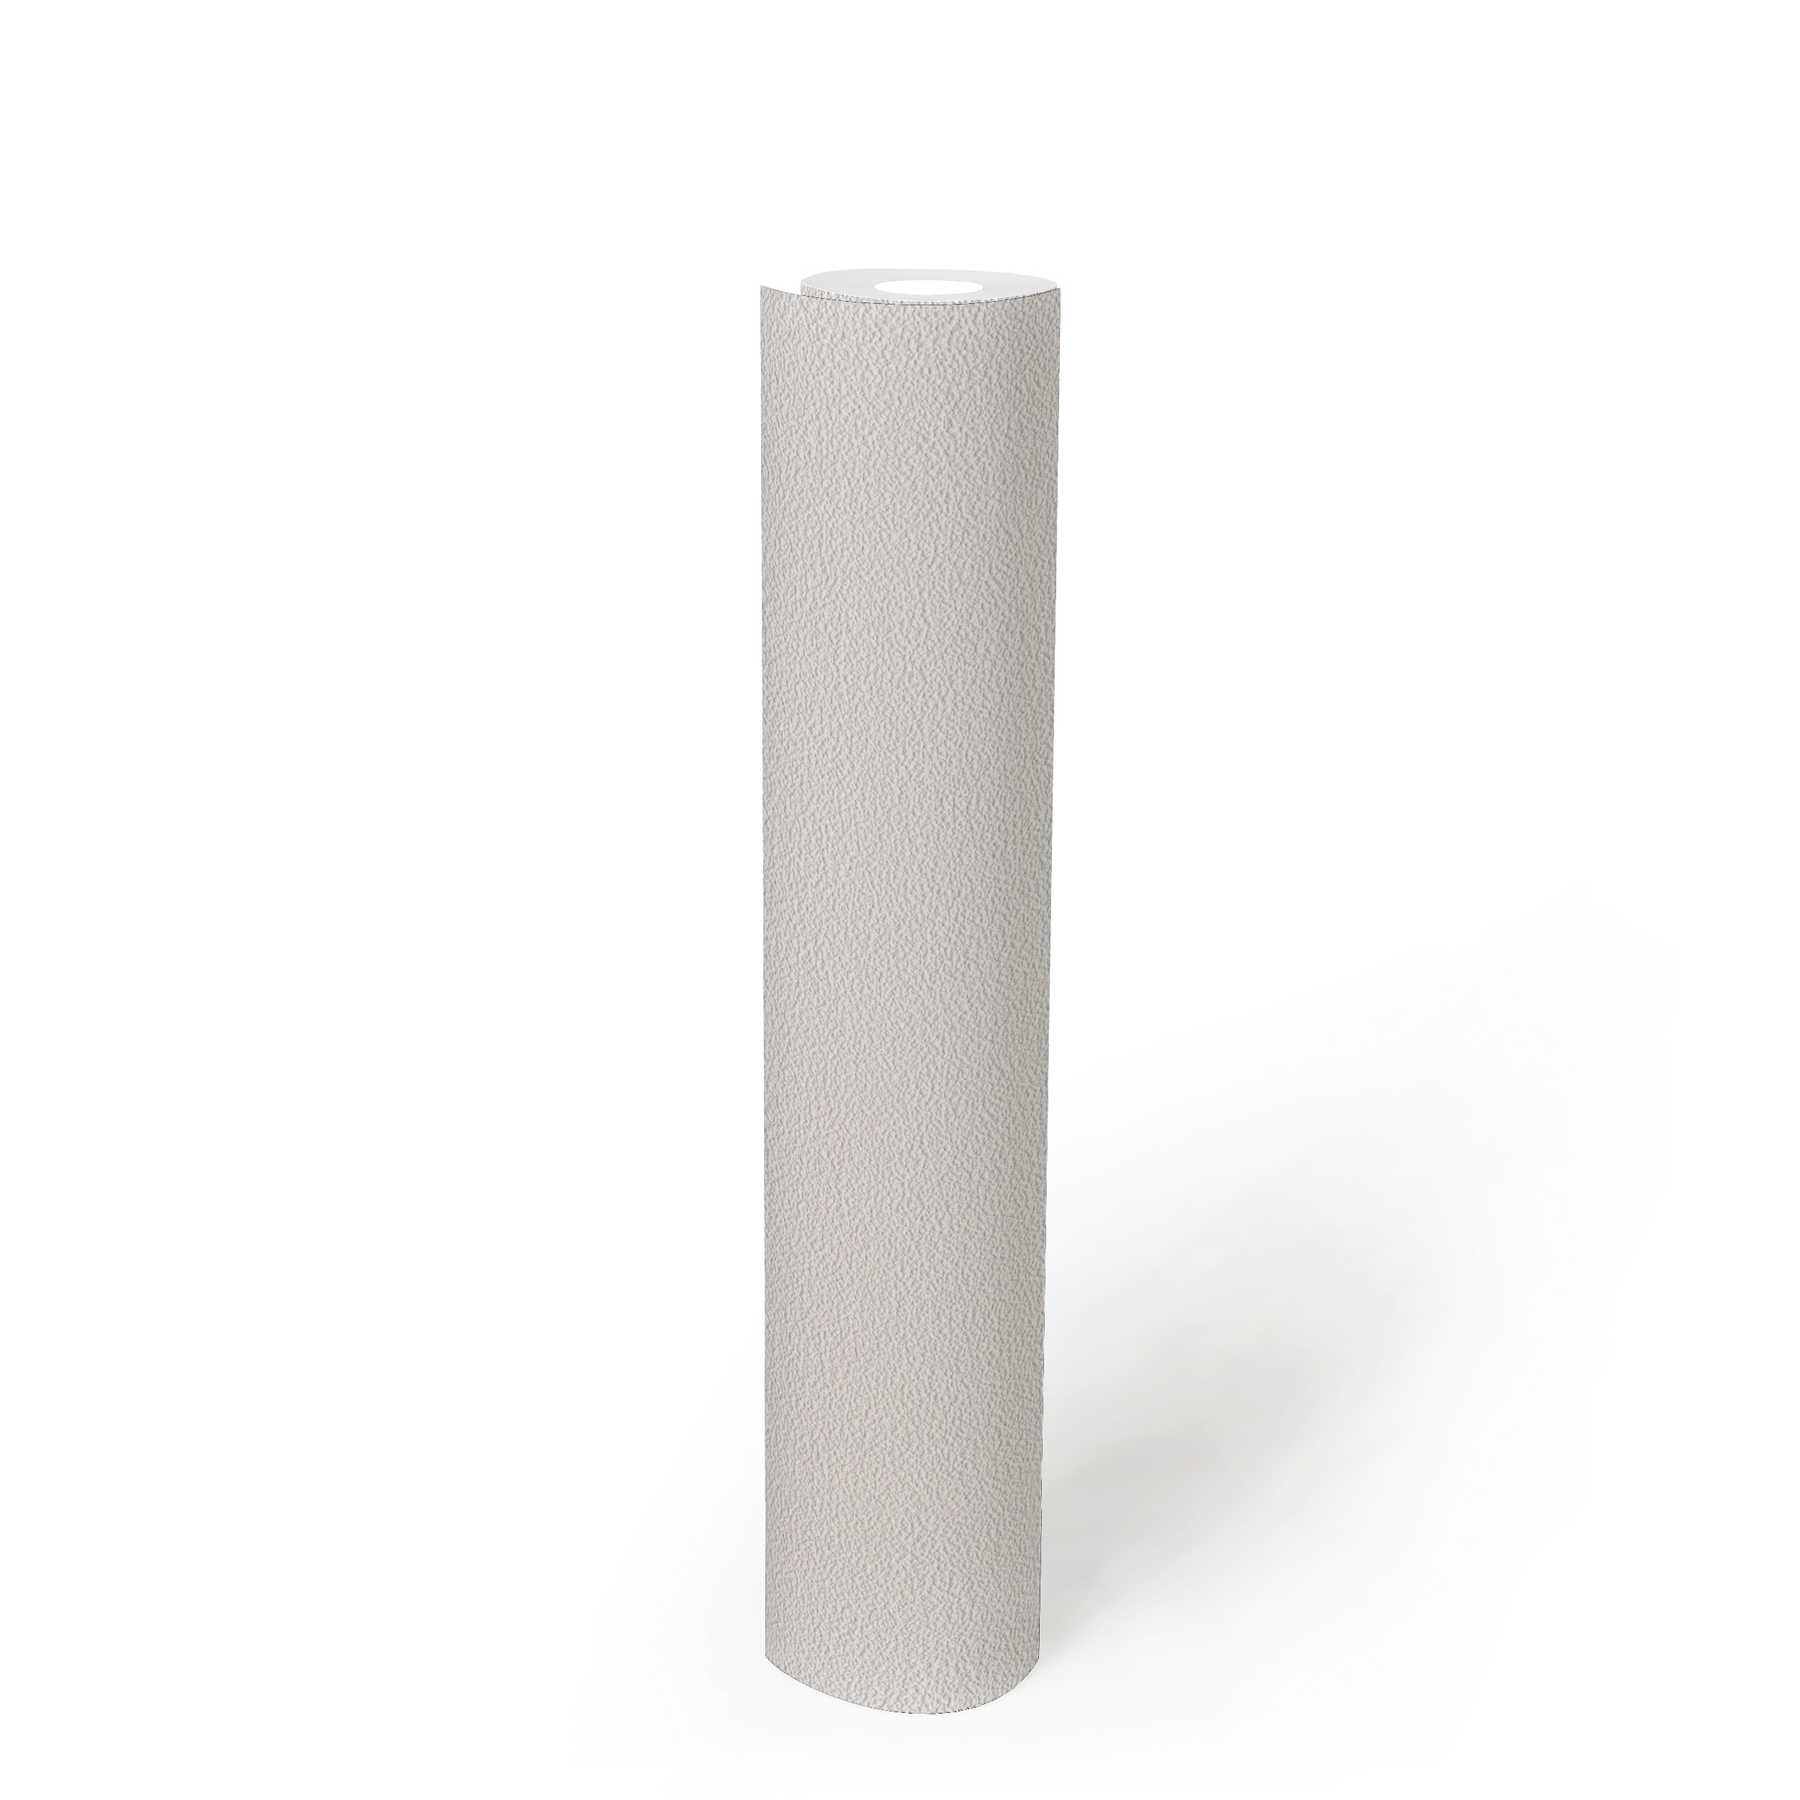             Papier peint blanc avec surface structurée à l'aspect crépi fin
        